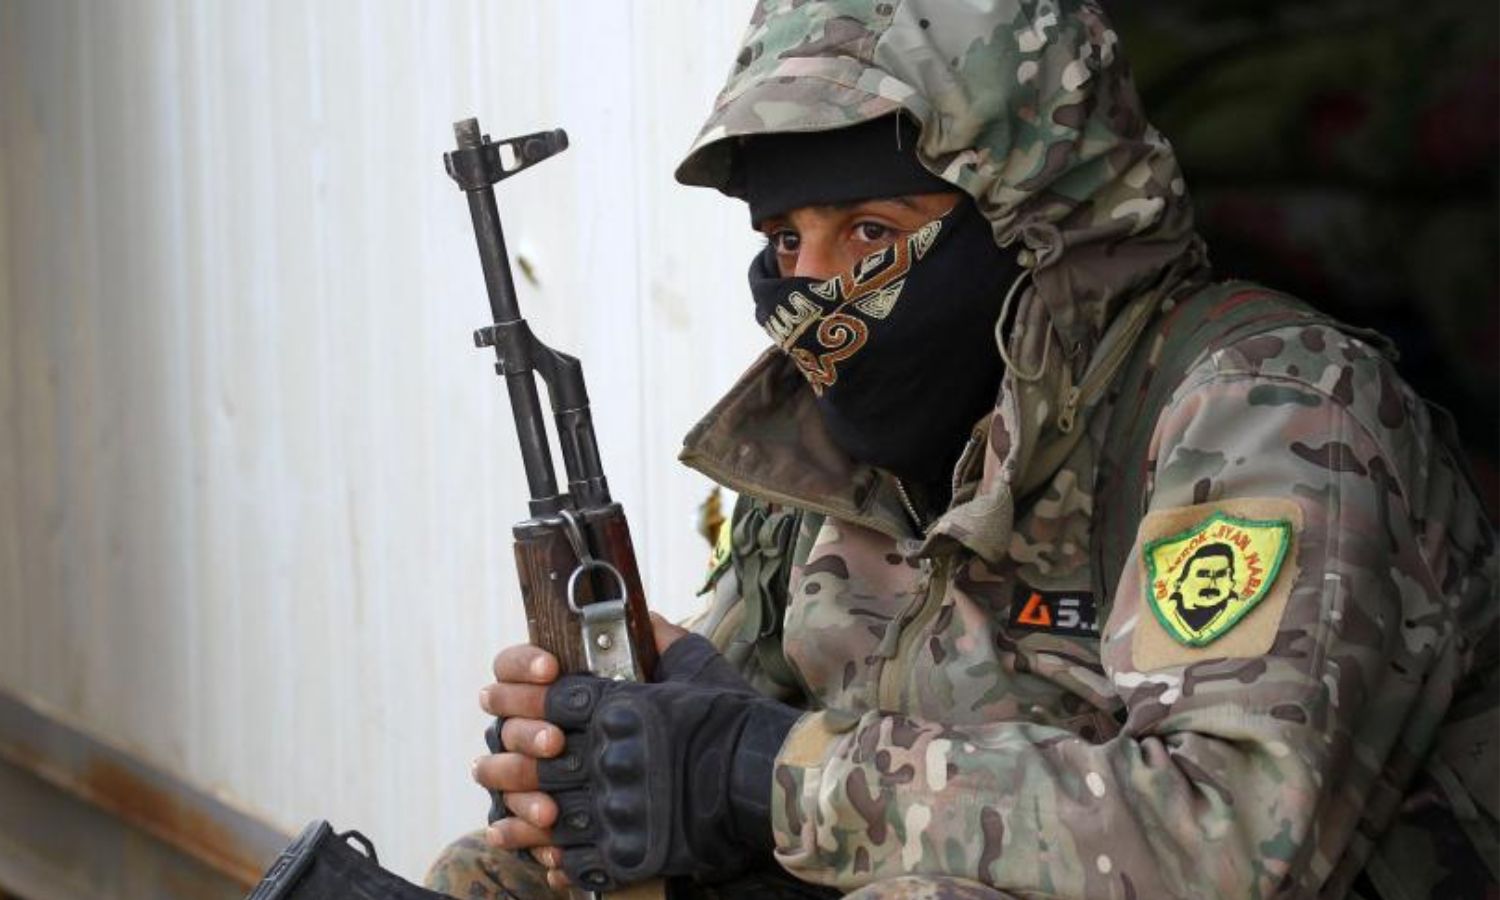 مقاتل في "قوات سوريا الديمقراطية" (قسد) في دير الزور شرقي سوريا- 17 من آذار 2019 (رويترز)